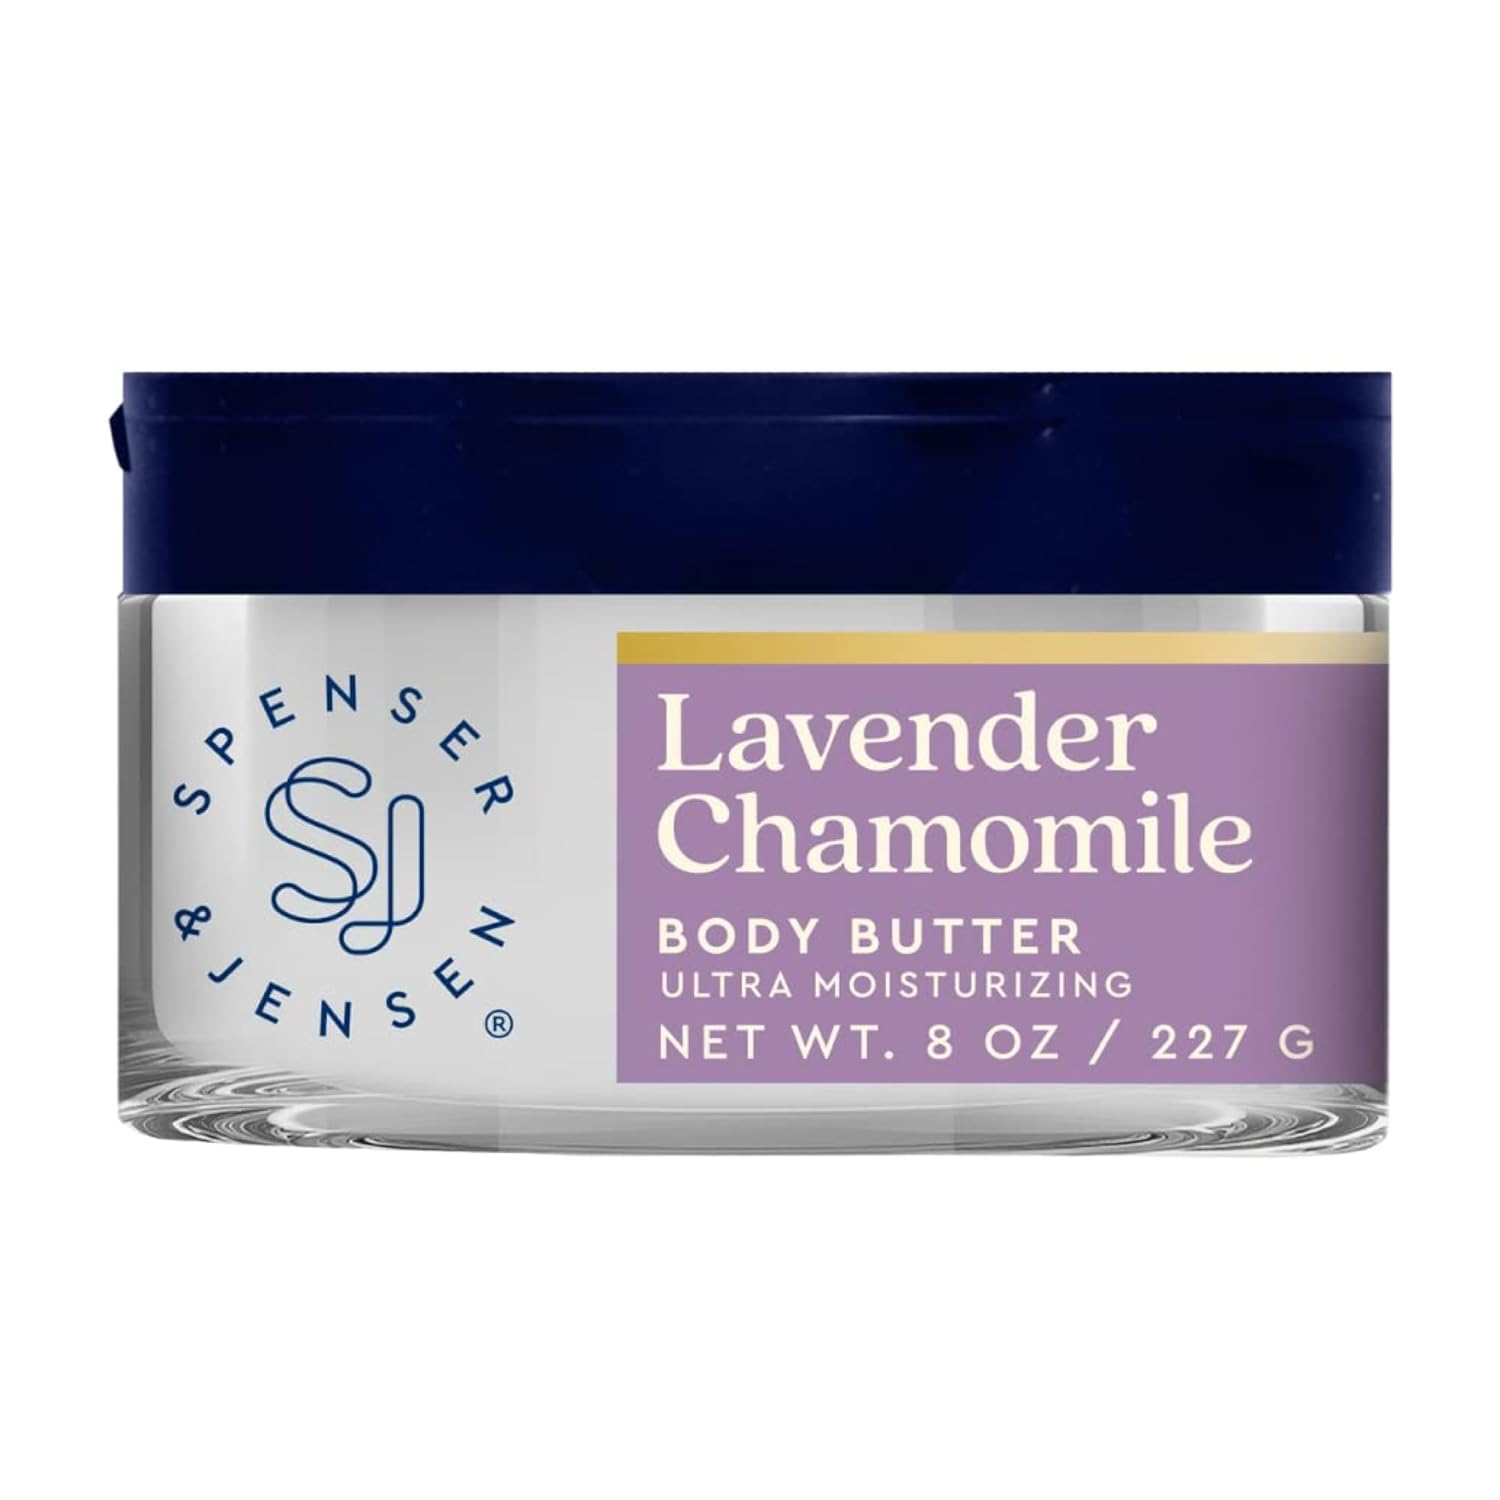 Spenser & Jensen Hydrating Lavender & Chamomile Body Butter - Gentle On All Skin Types - Moisturizing Body Lotion for Women & Men - Paraben Free - 8 Oz (Pack of 1)